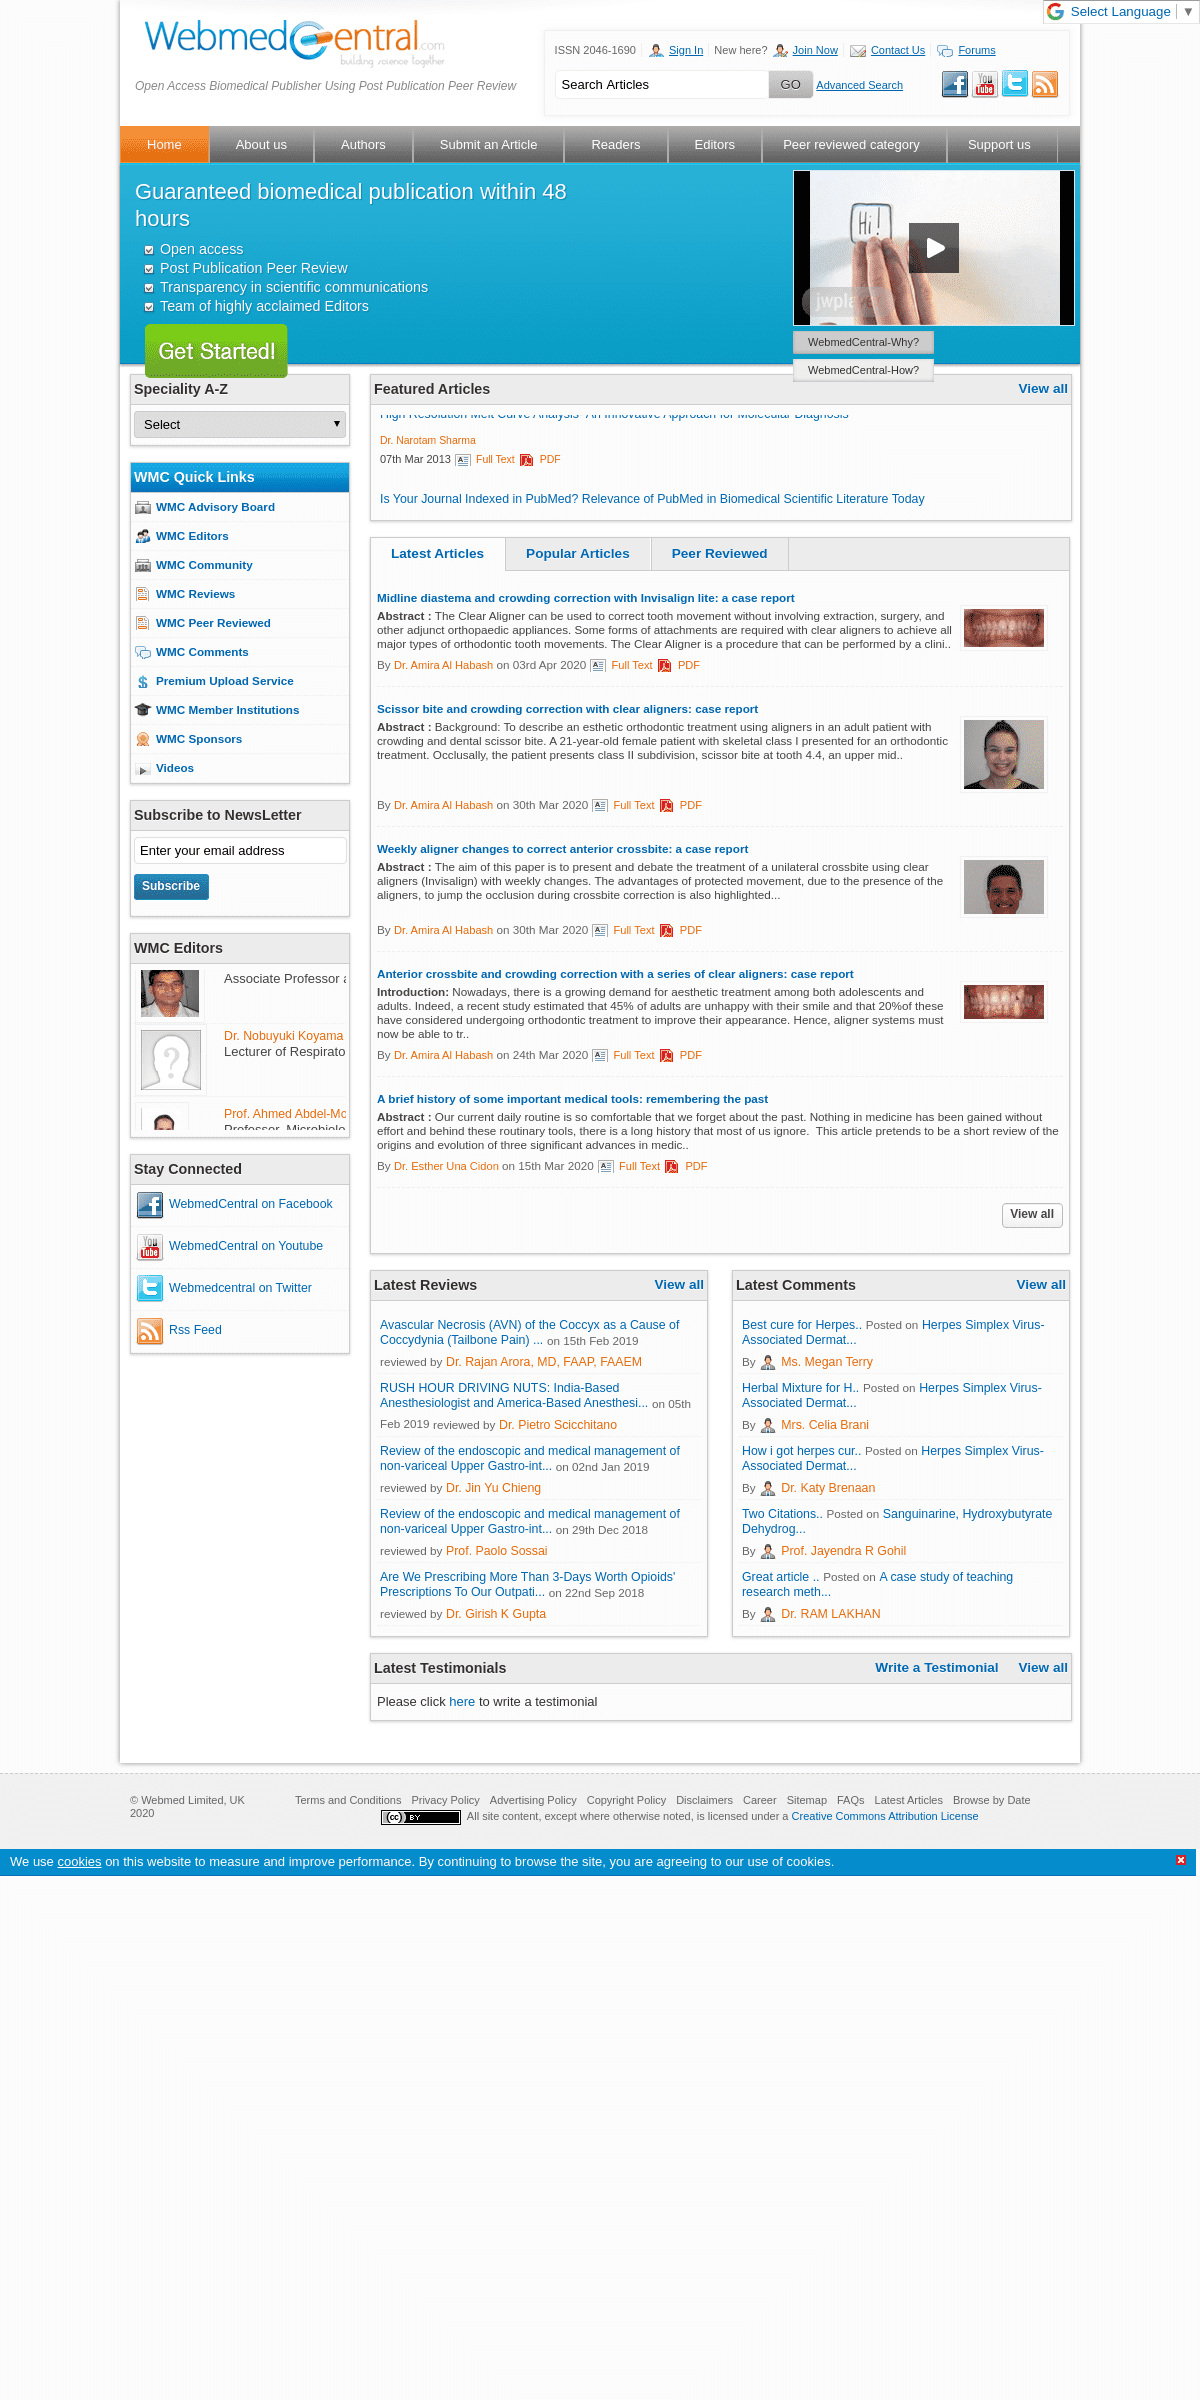 A complete backup of webmedcentral.co.uk